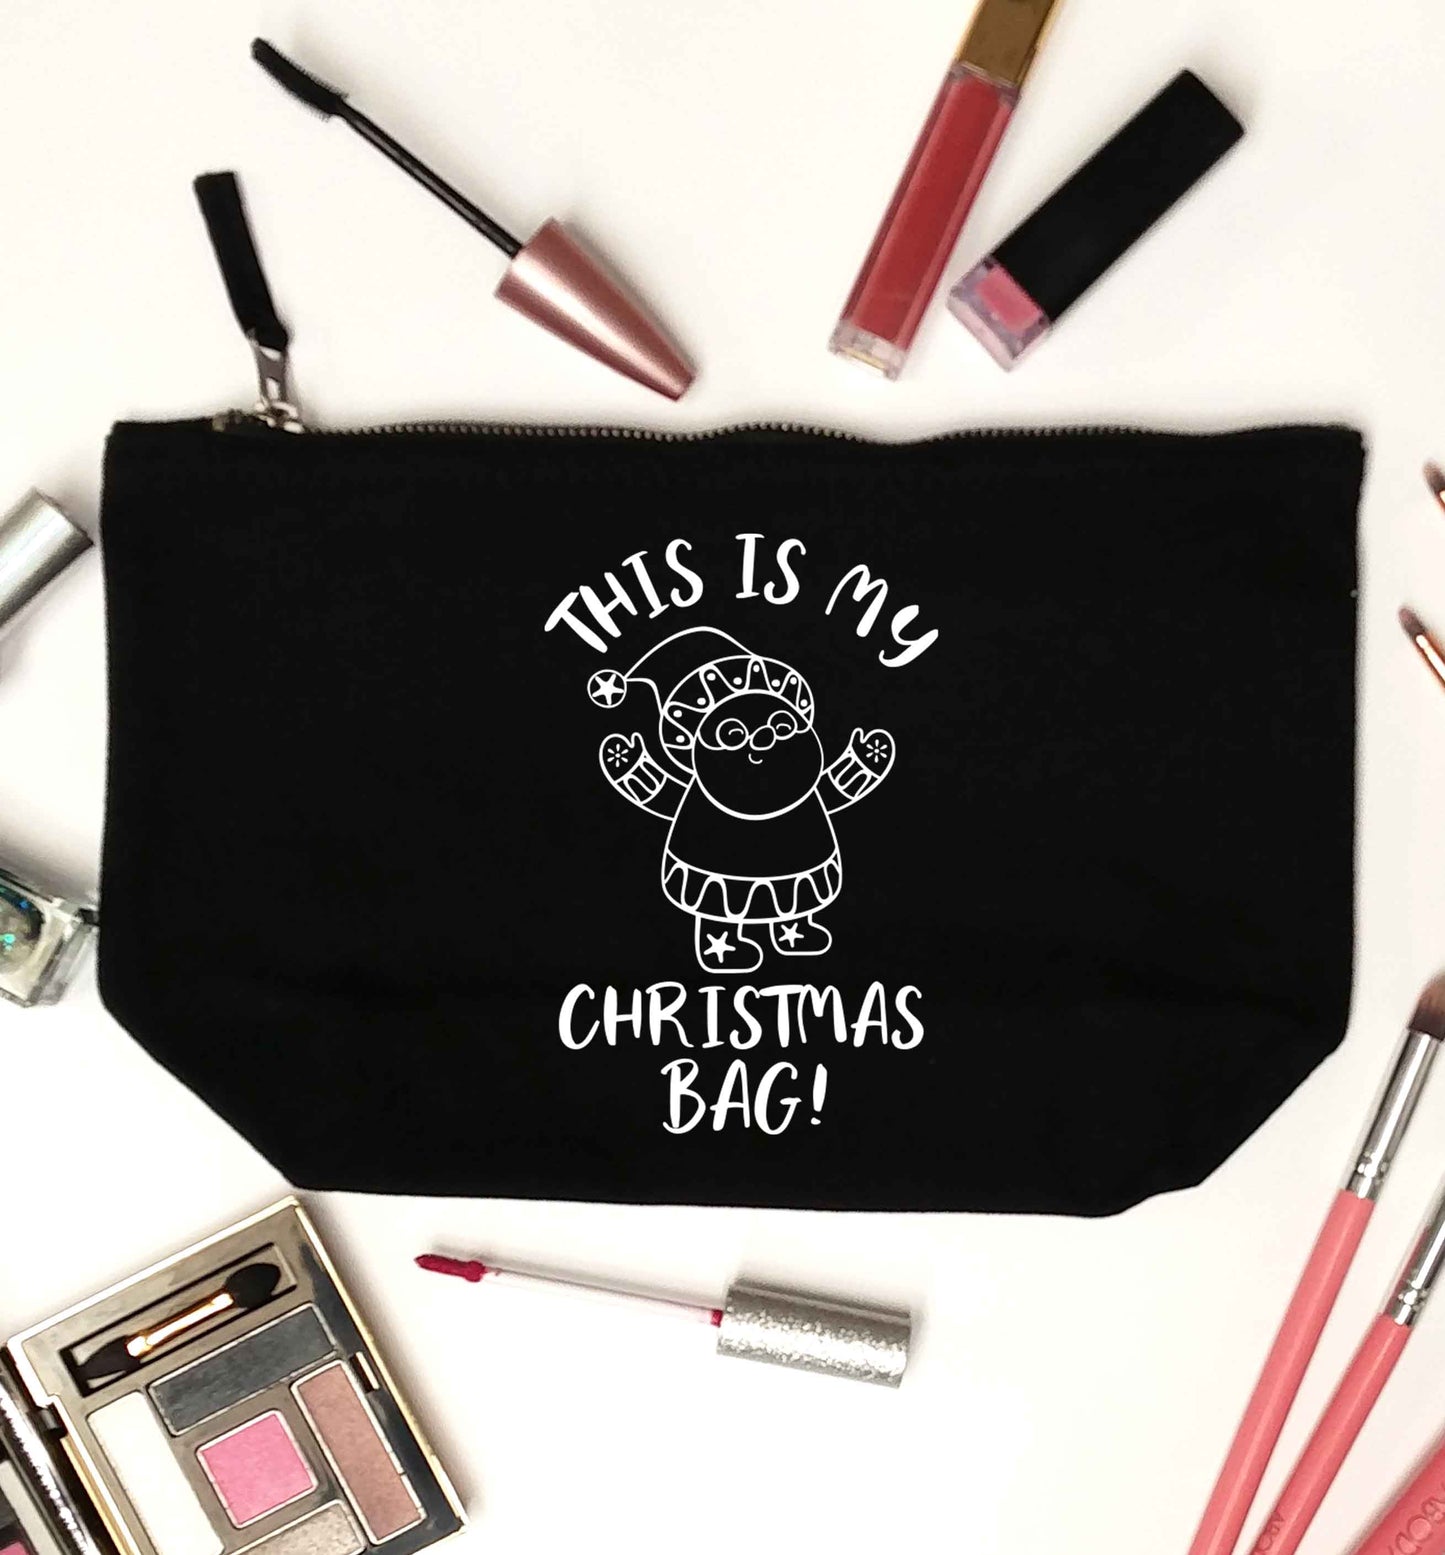 This is my Christmas bag black makeup bag